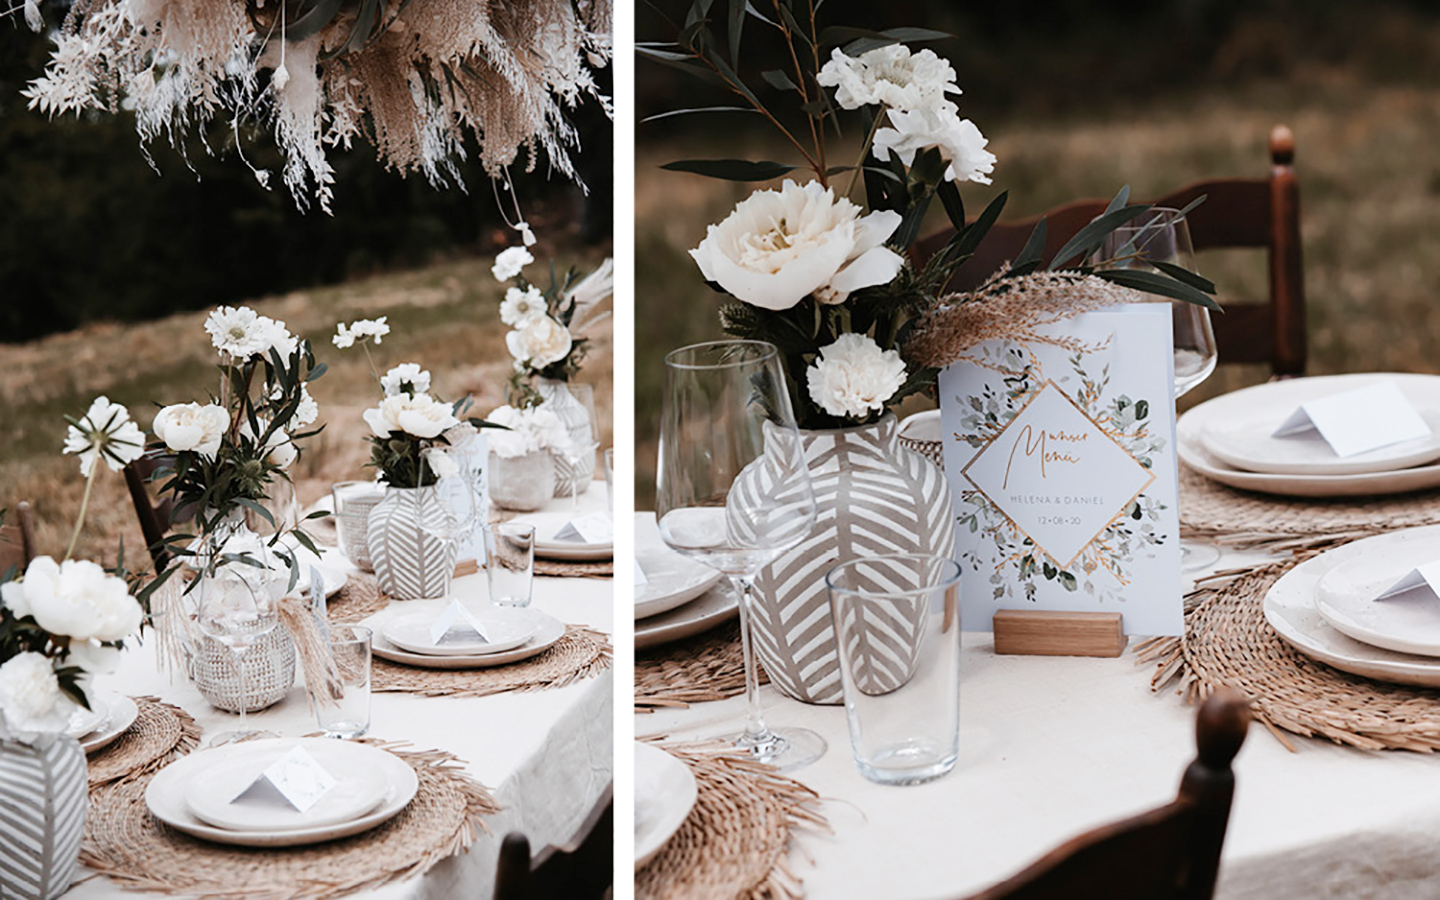 Tischdeko Hochzeit: Hochzeitstisch im Boho-Stil: Die beige Deko passt wunderbar zu den weißen Blumen und dem hellen Pampasgras. Der gedeckte Tisch im Grünen fügt sich wundervoll in die Natur ein.